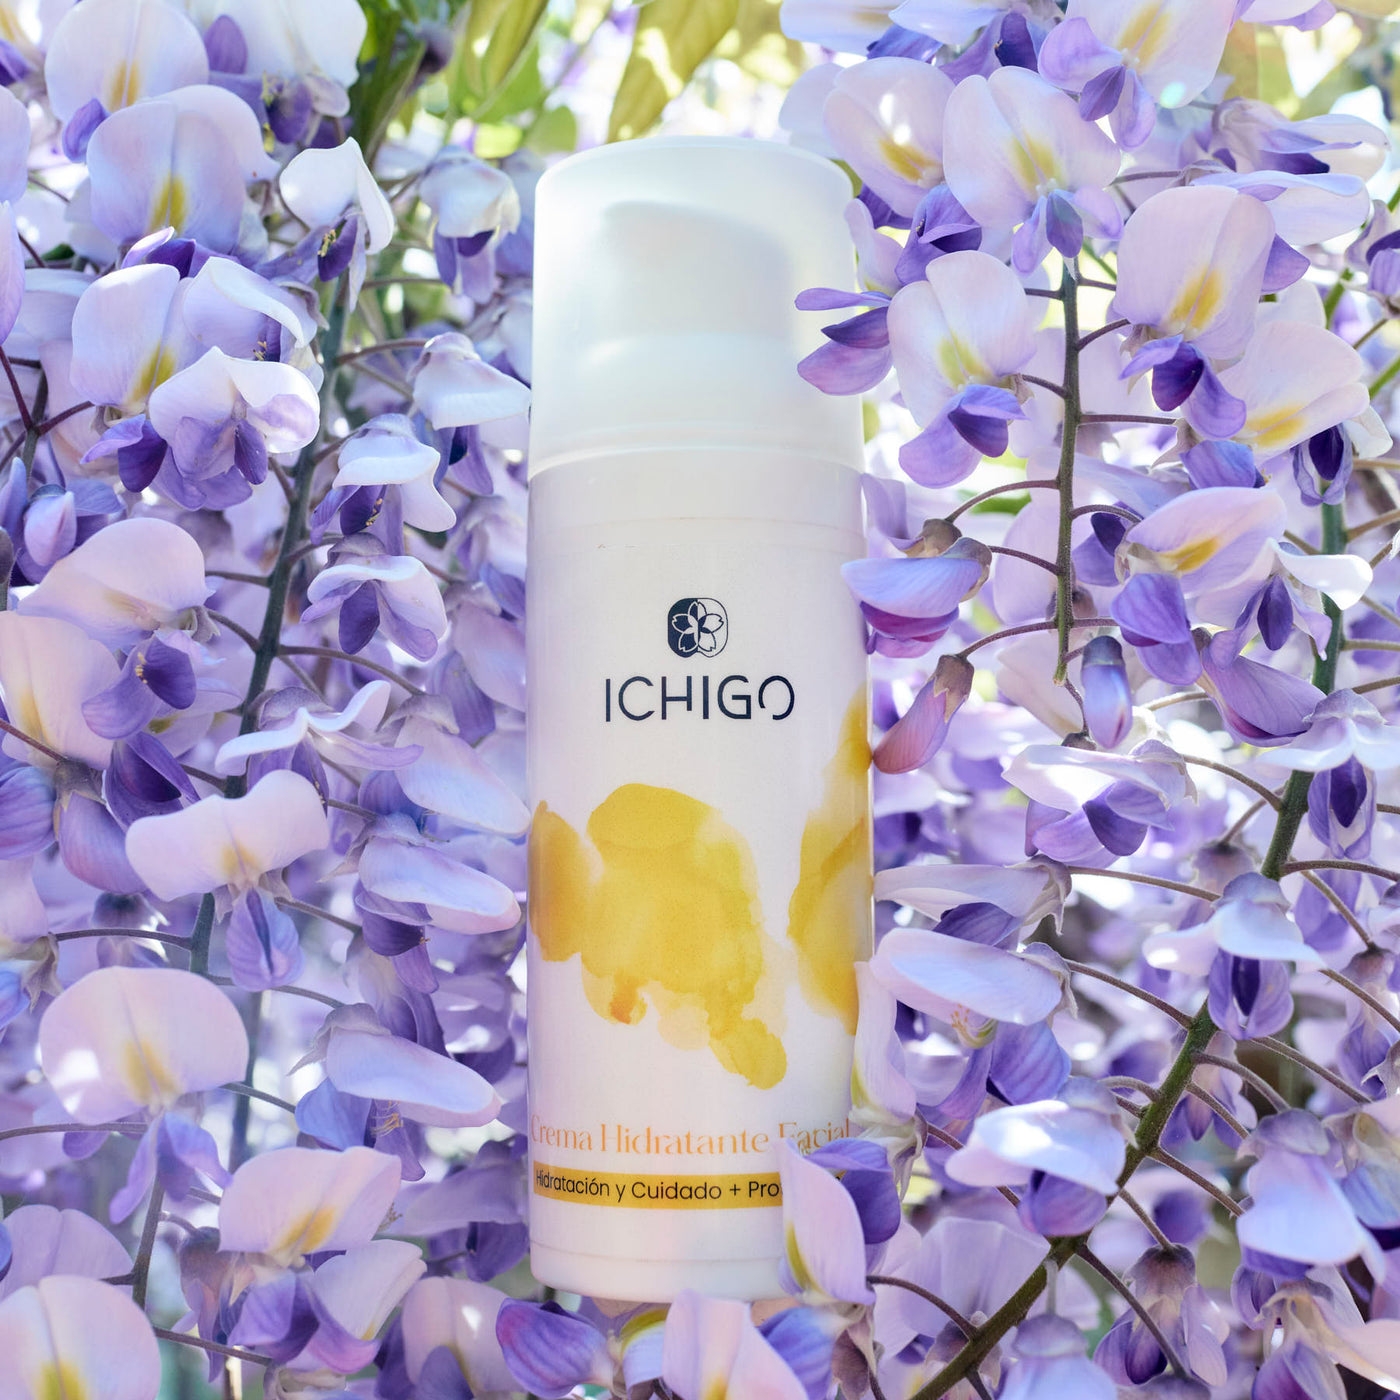 ICHIGO Facial Moisturizing Cream 30 Feuchtigkeit und Pflege + Sonnenschutz